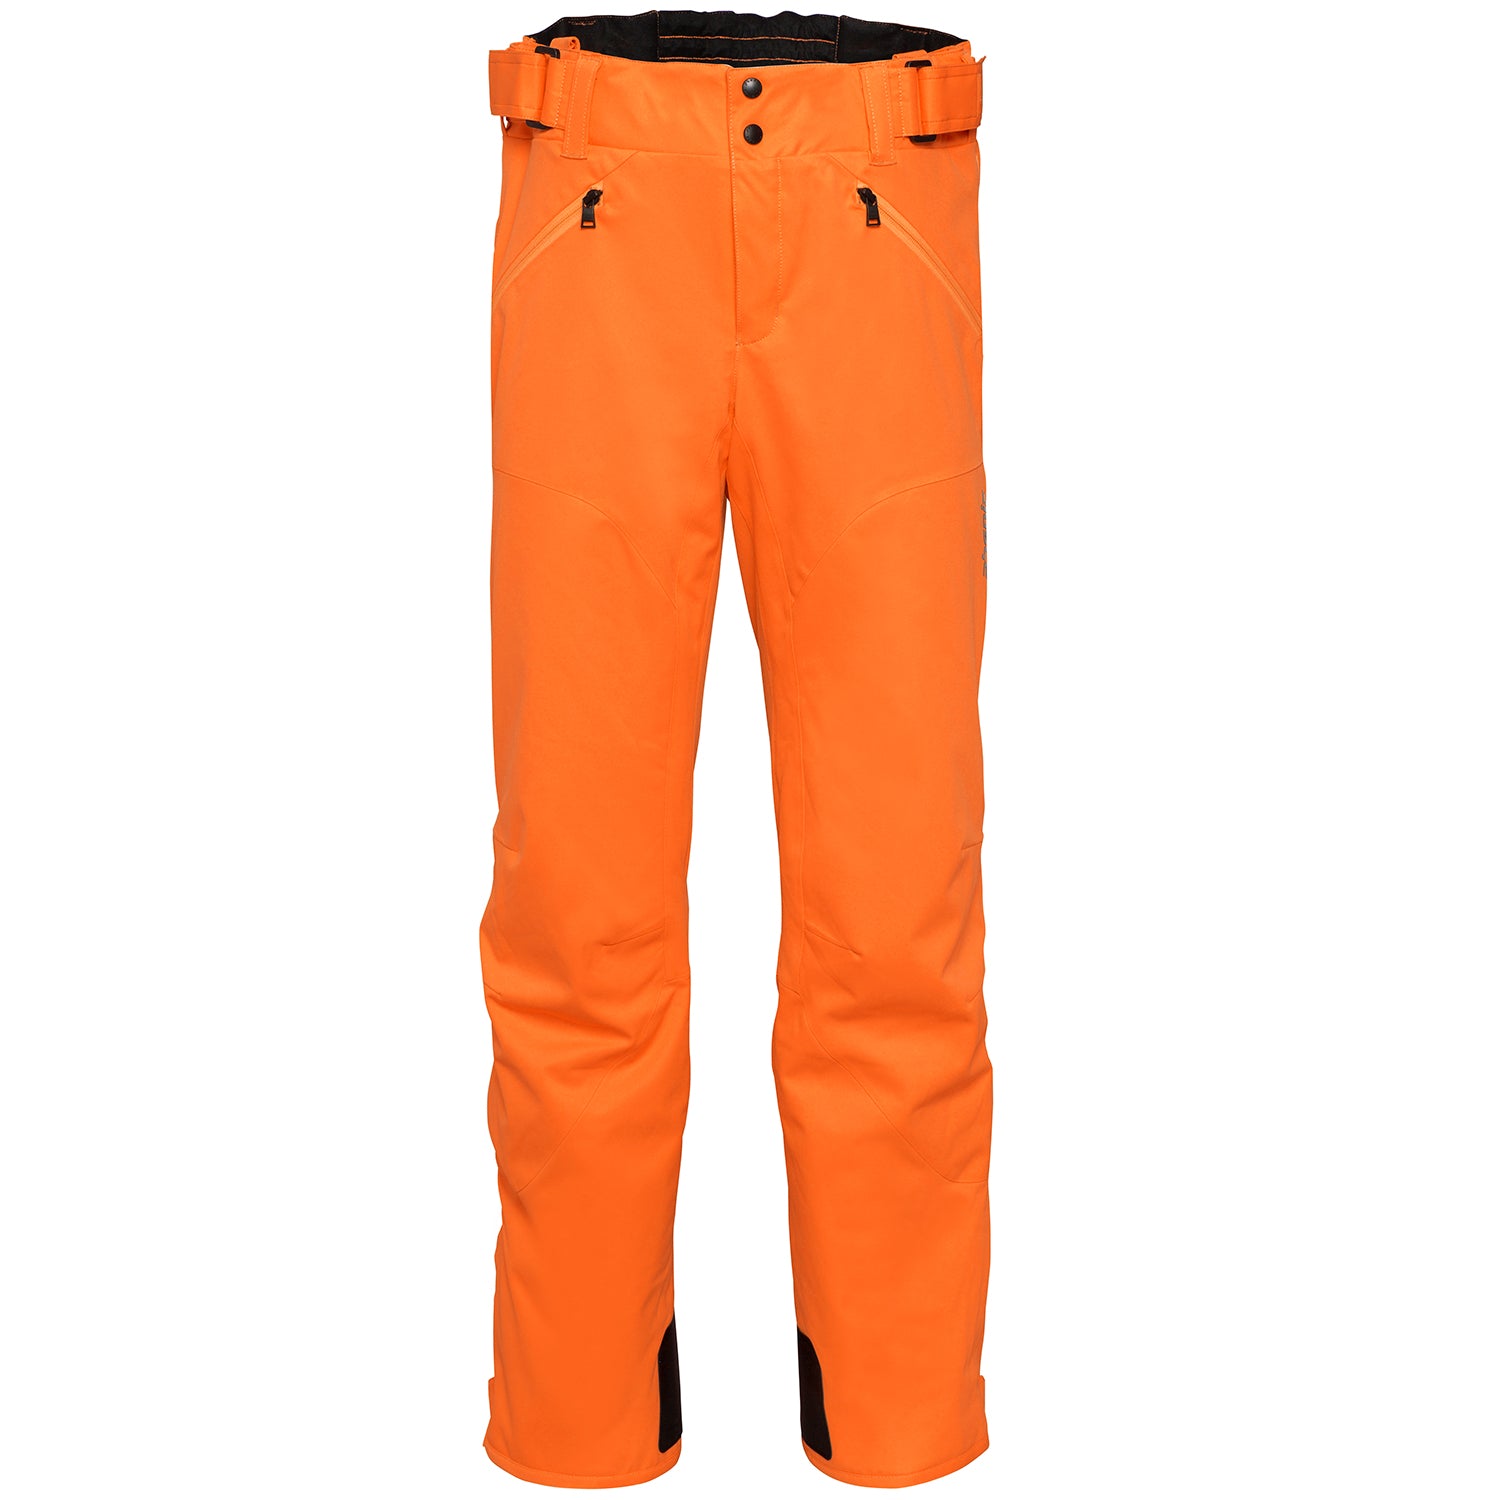 Phenix Hakuba Slim Ski Pant 2019 Fluro Orange